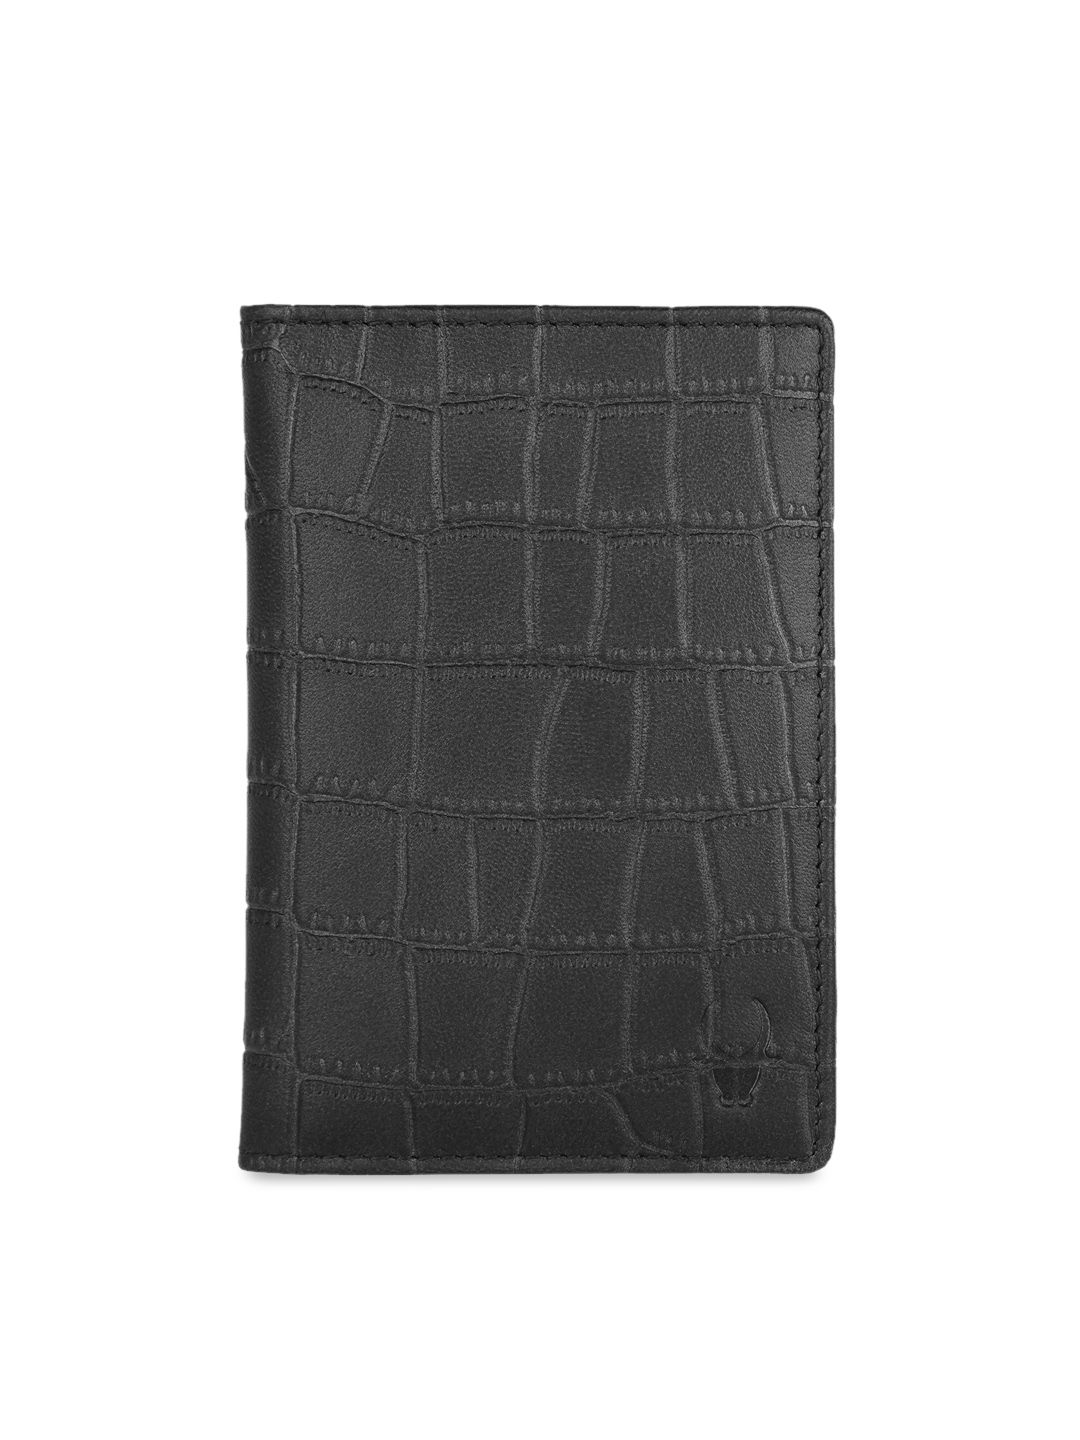 WildHorn Unisex Black Textured Leather Passport Holder Price in India